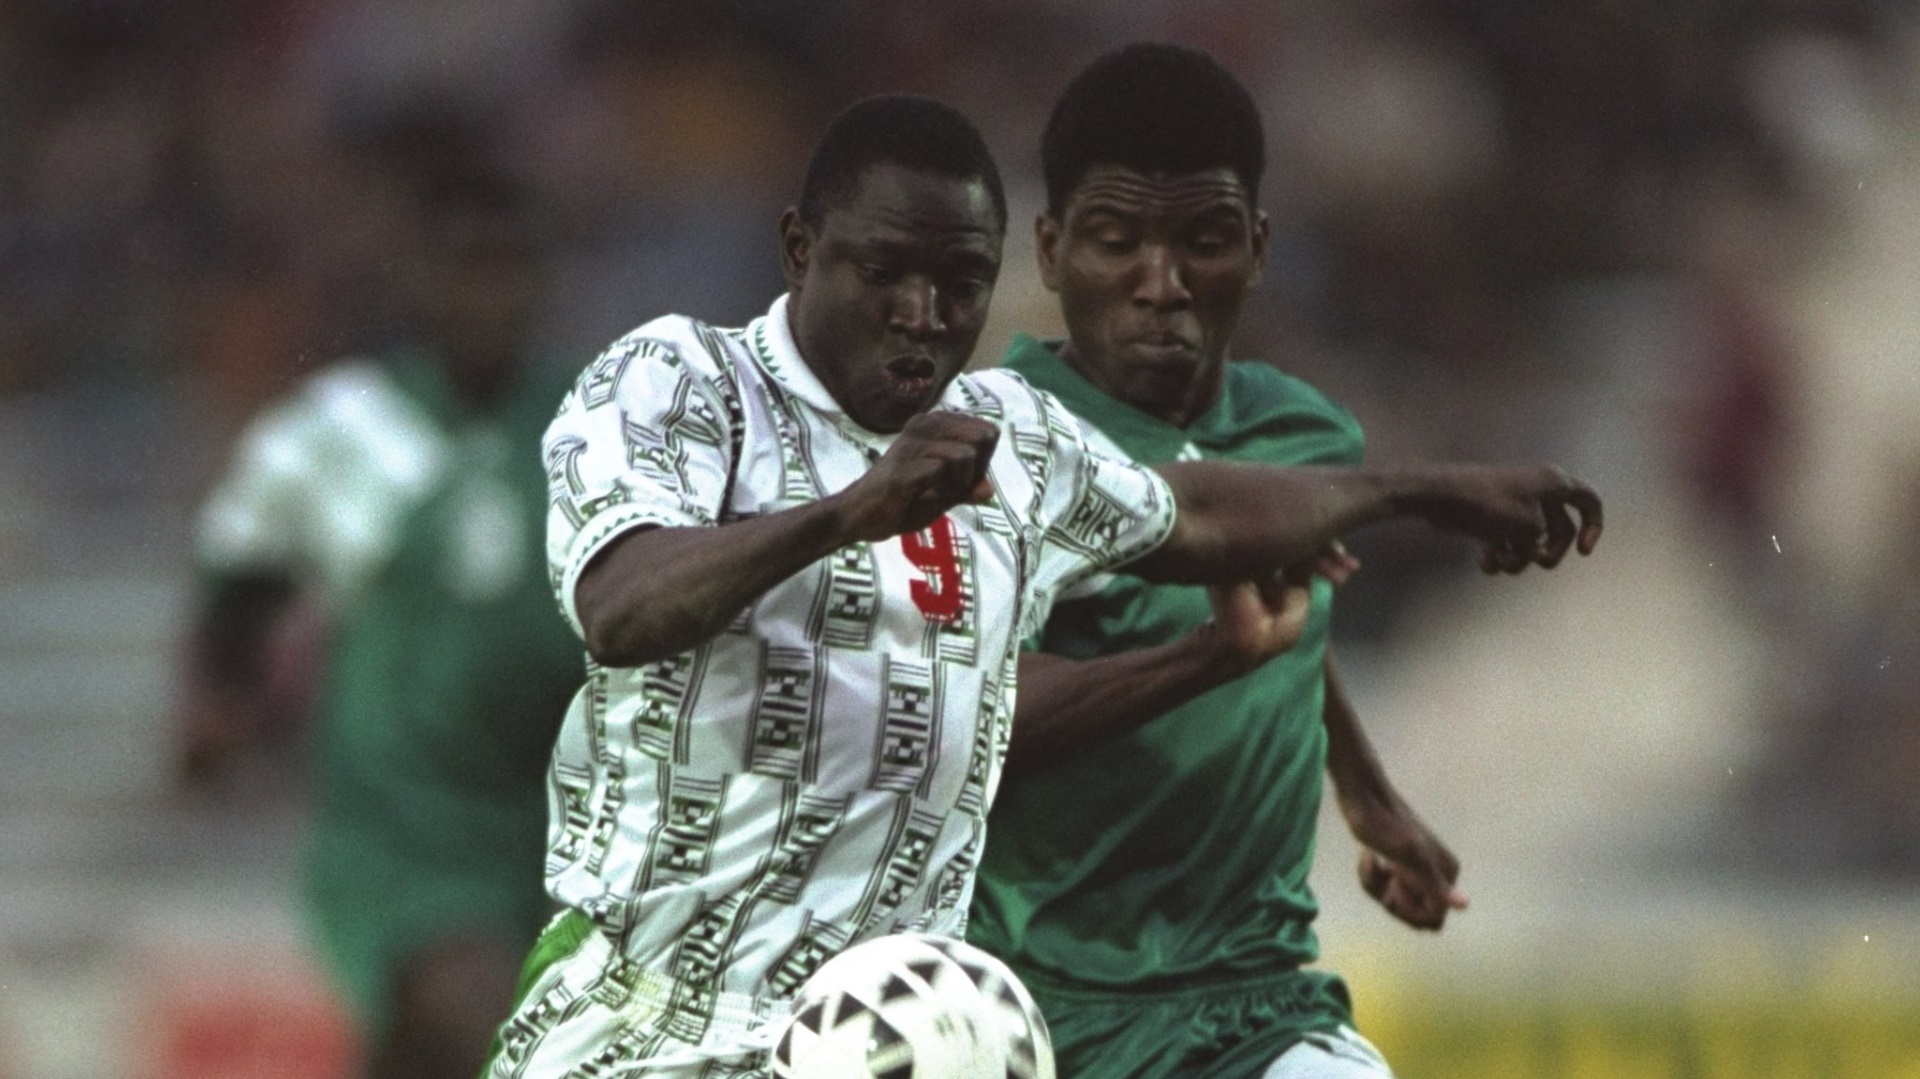 Rashidi Yekini of Nigeria vs. Zambia